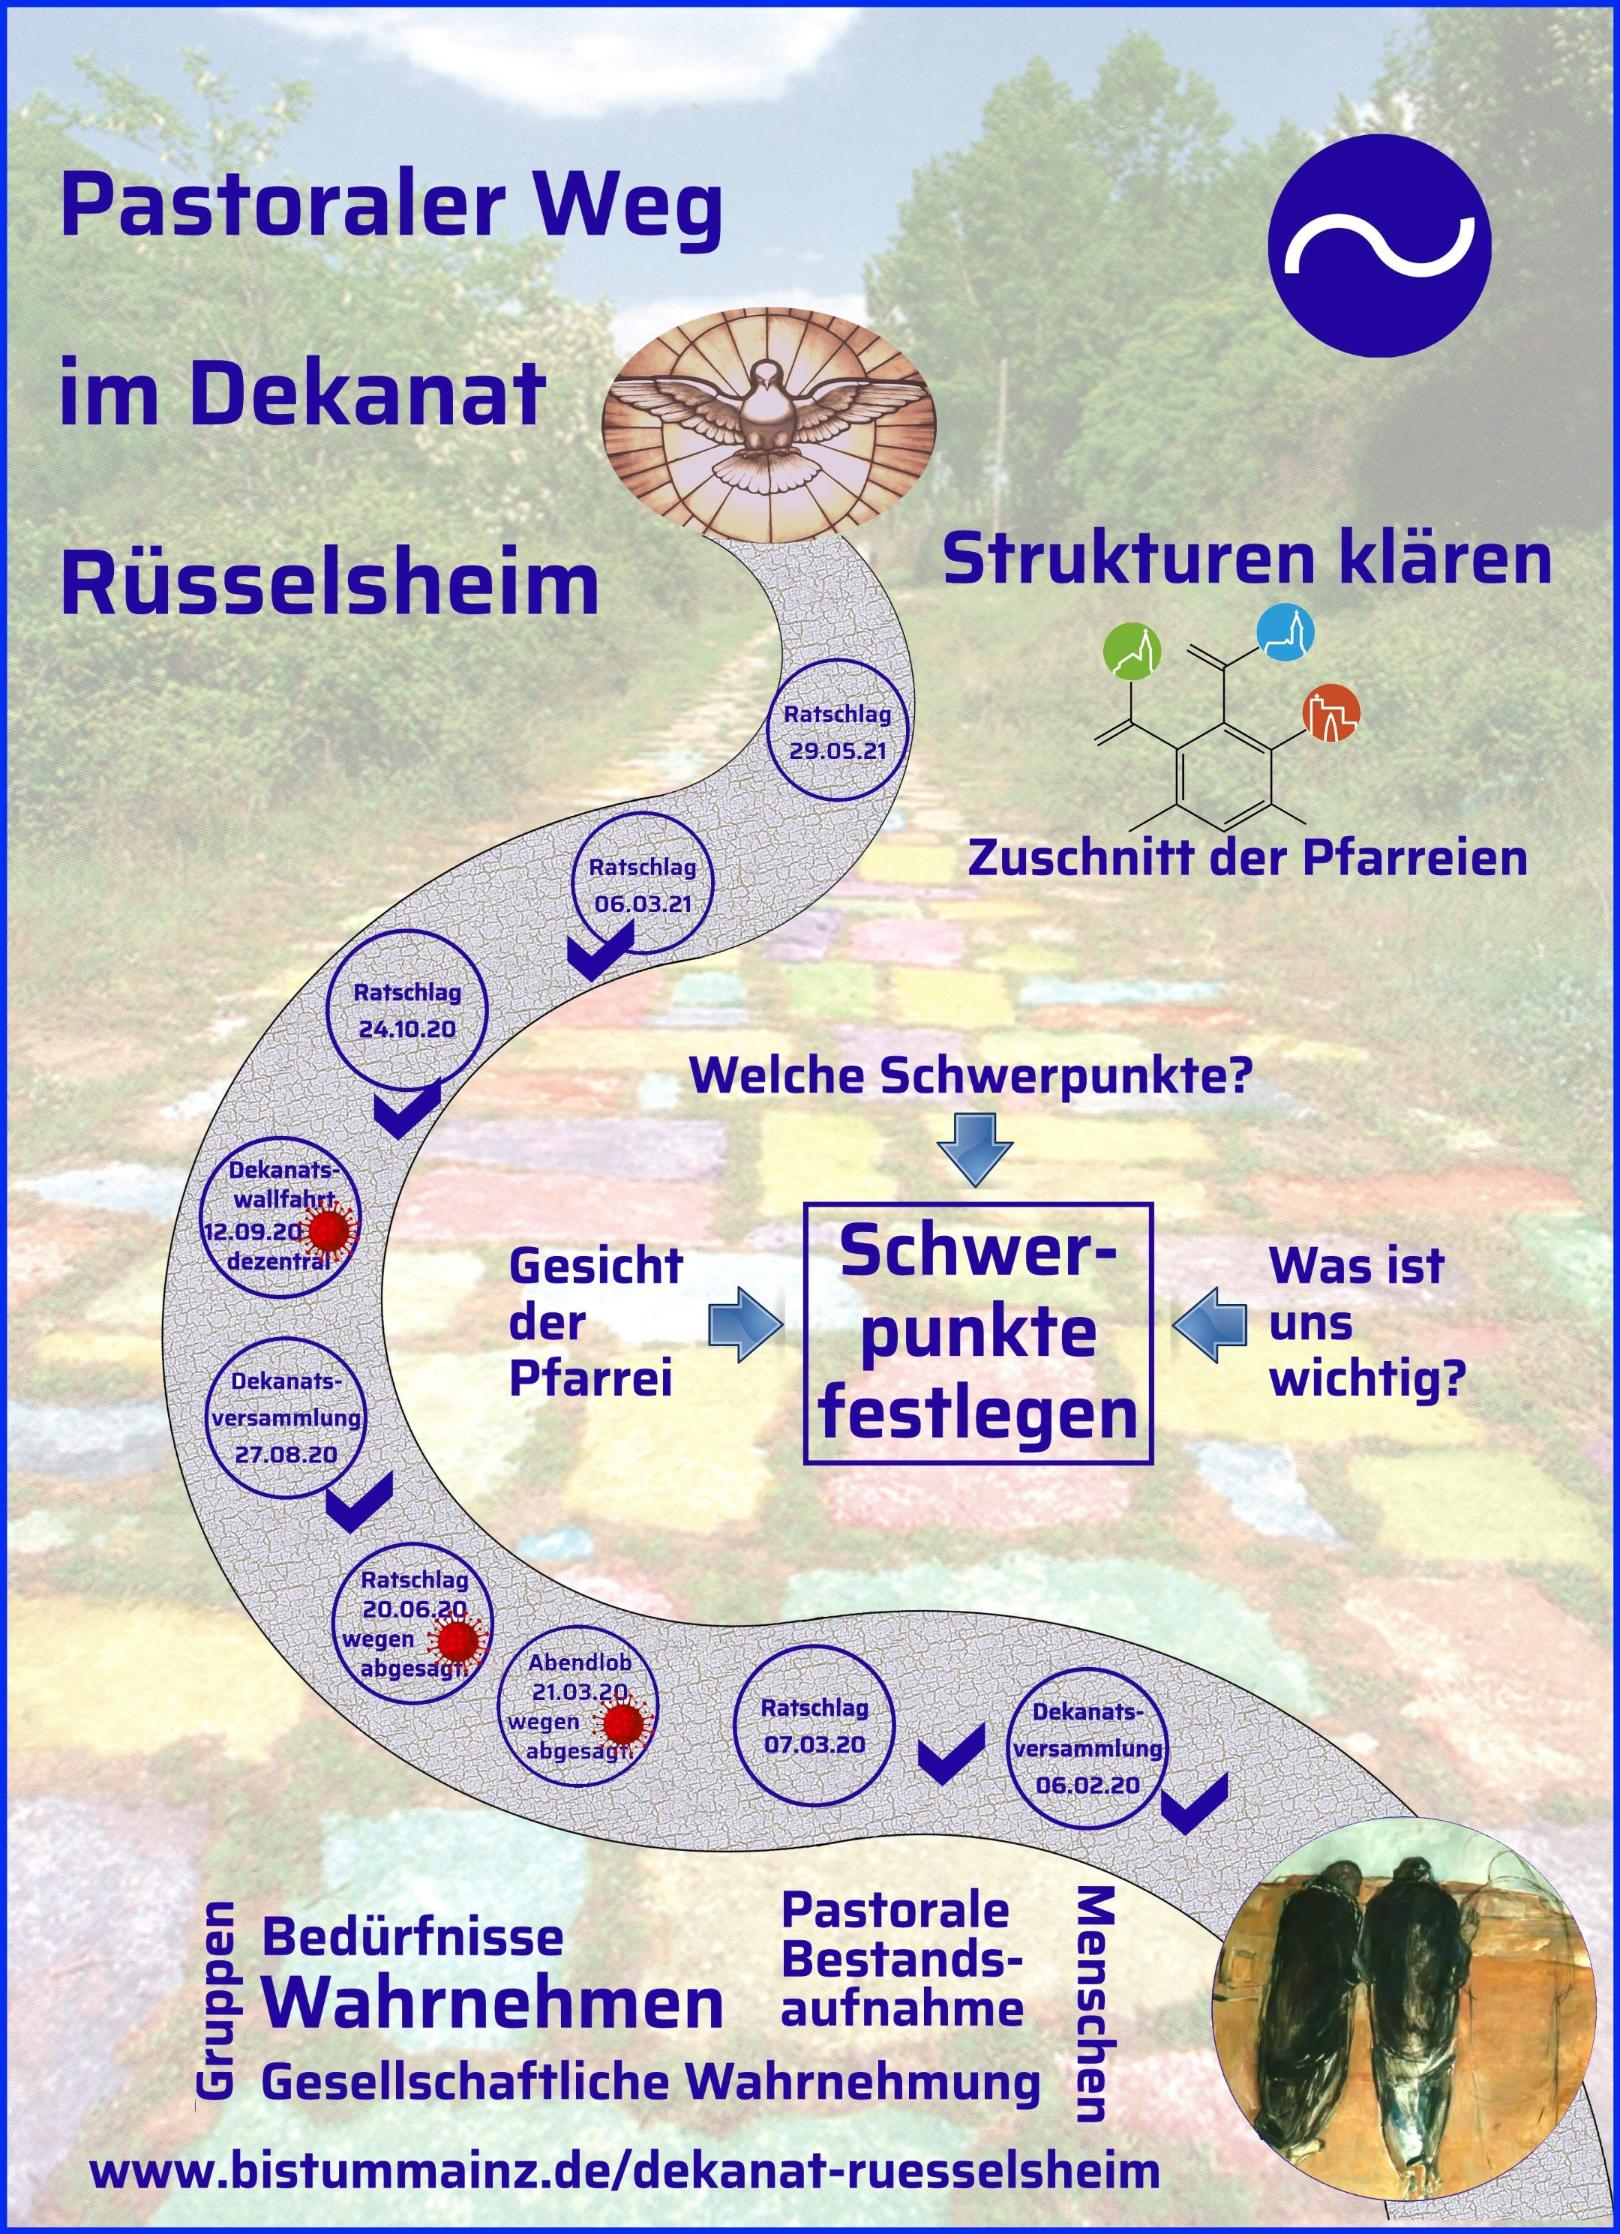 Plakat Pastoraler Weg - aktuelle Fassung nach dem Ratschlag am 06. März 2021 (c) Heinrich Witting